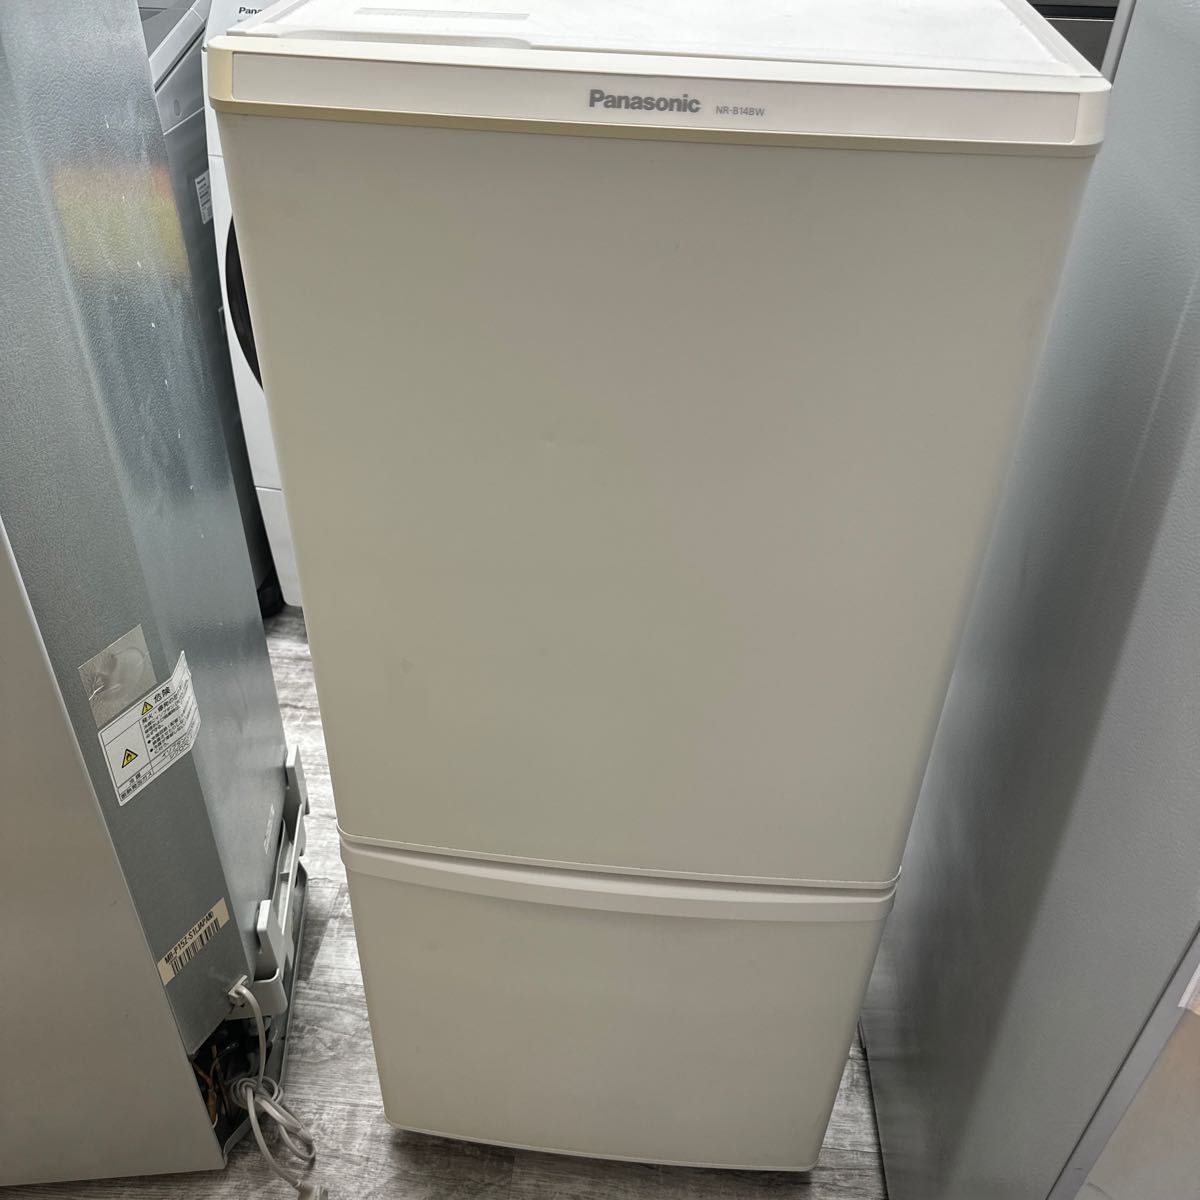 名古屋市内送料無料 パナソニック冷蔵庫 NR-B14BW-W 138L 2019年製